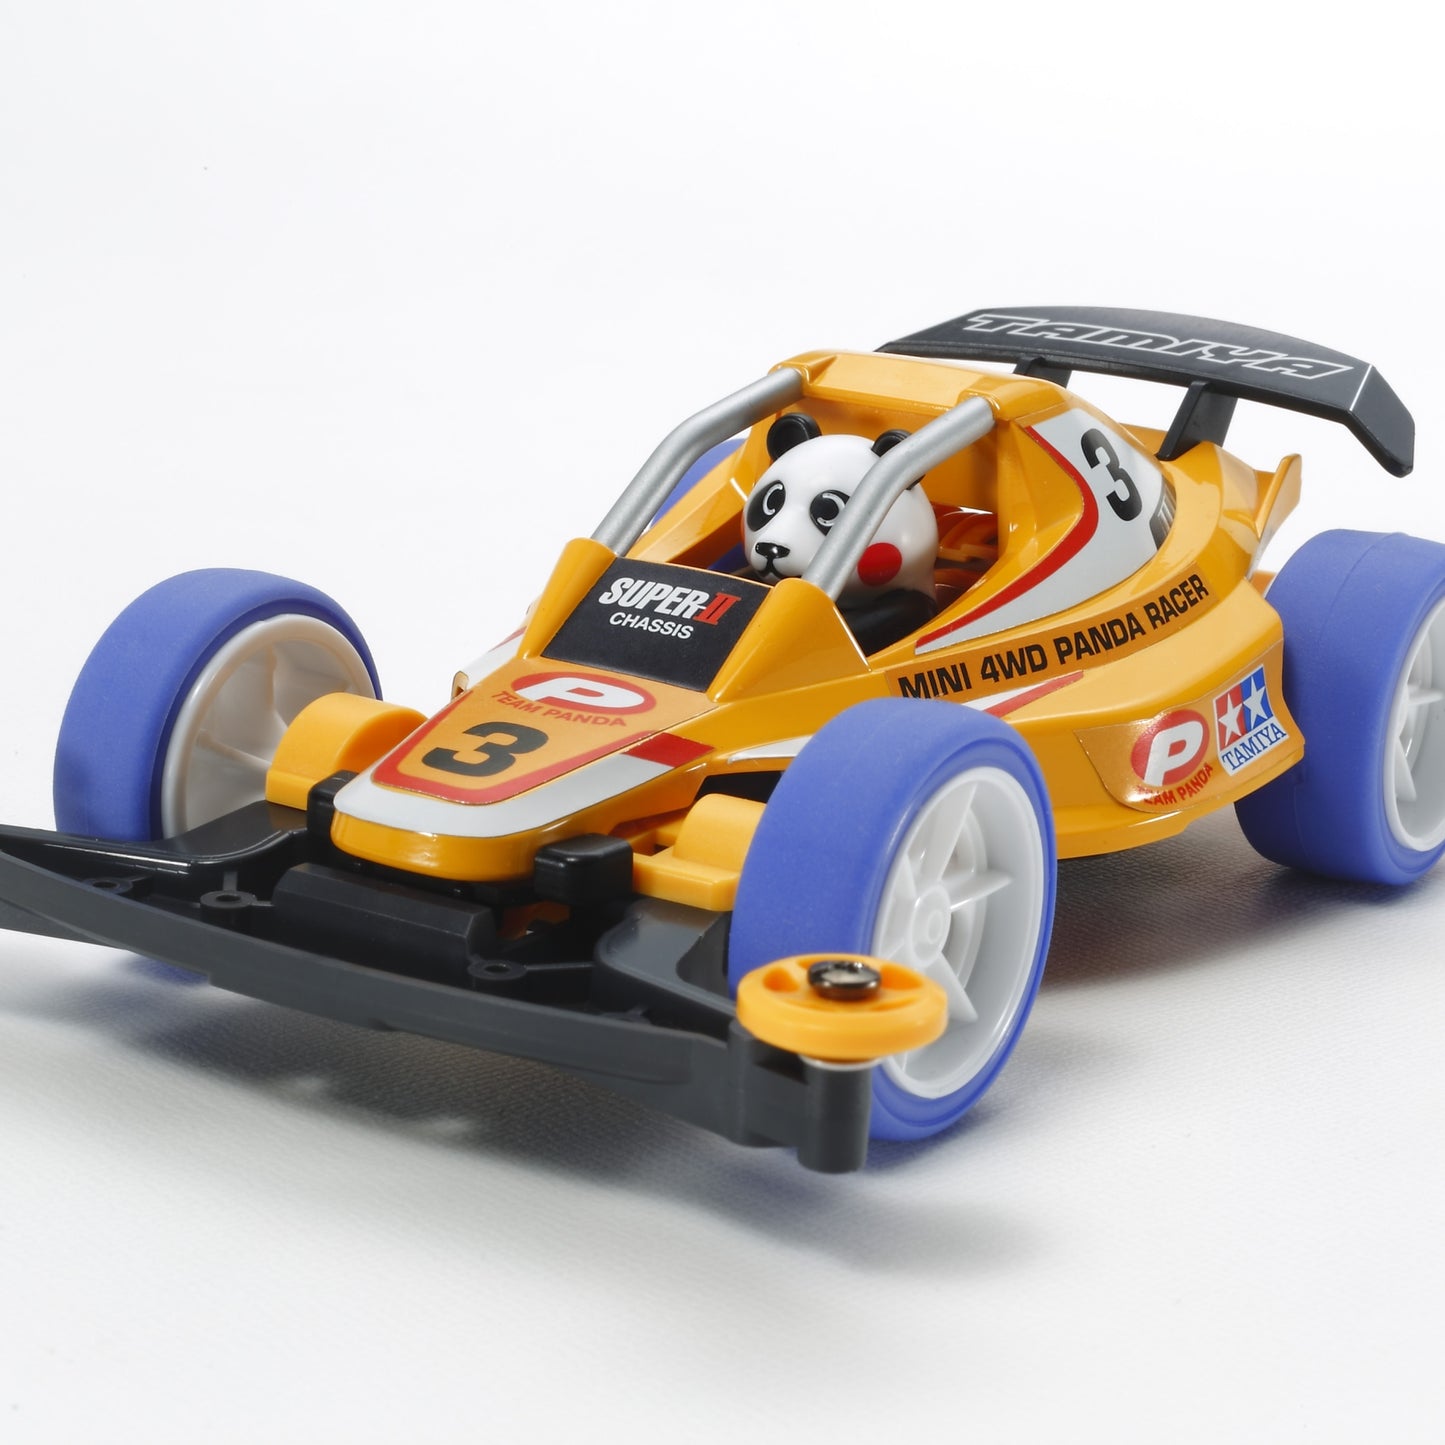 JR Panda Racer Mini 4WD Kit